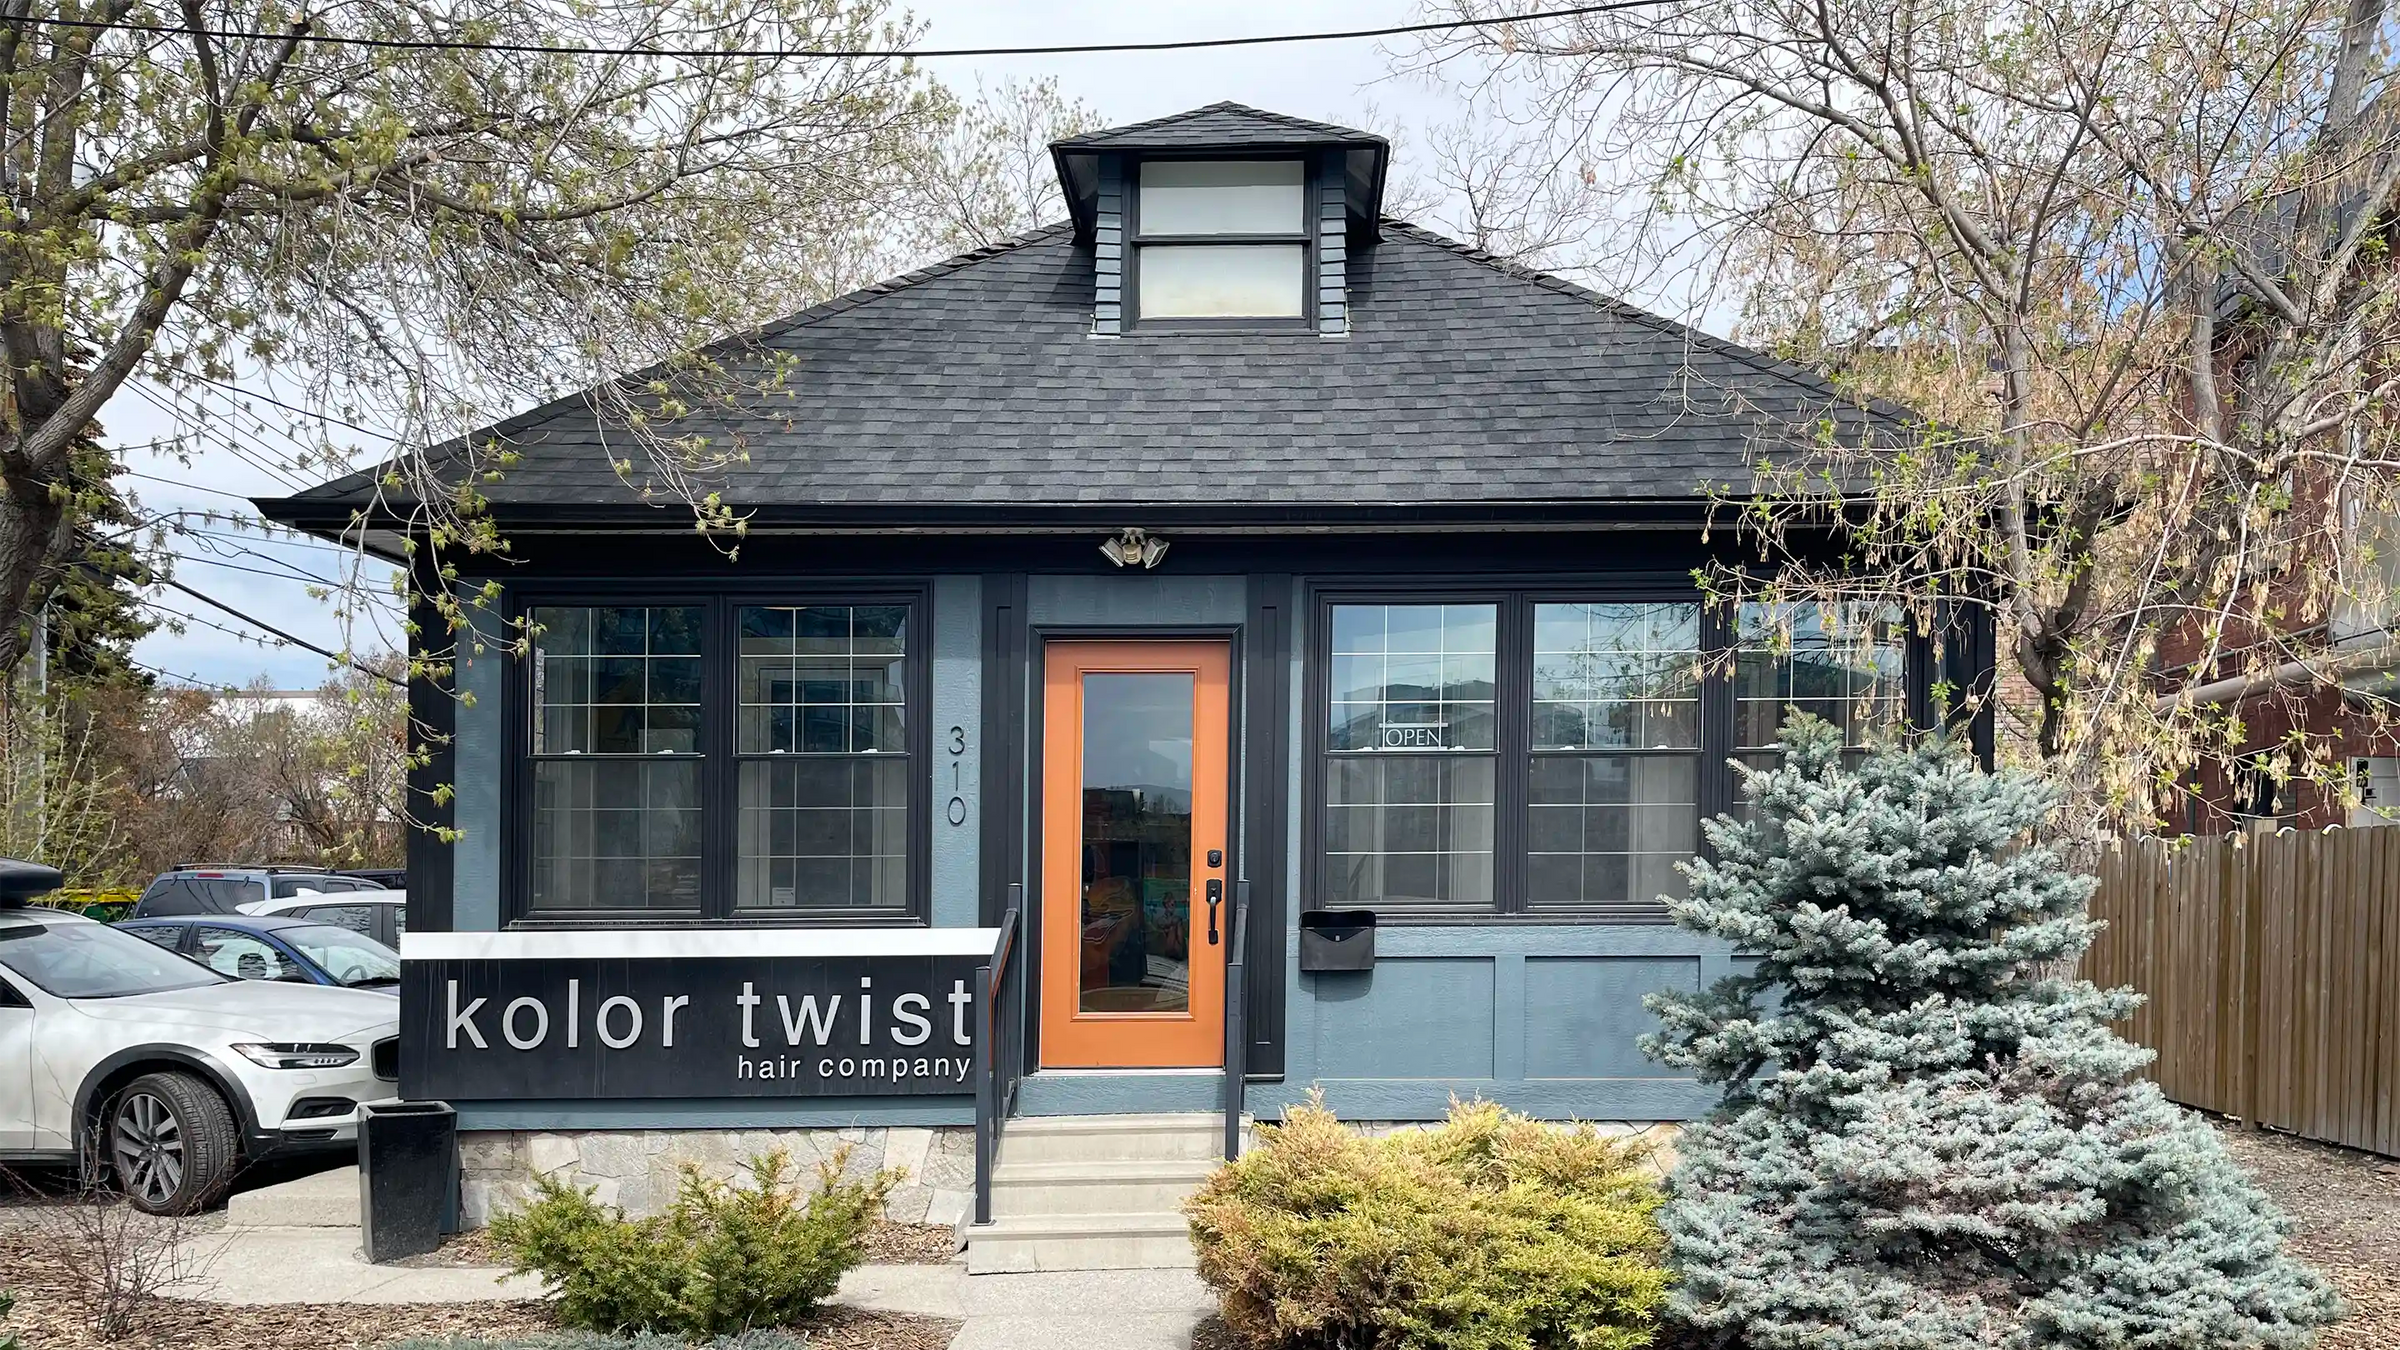 The front door of Kolor Twist salon